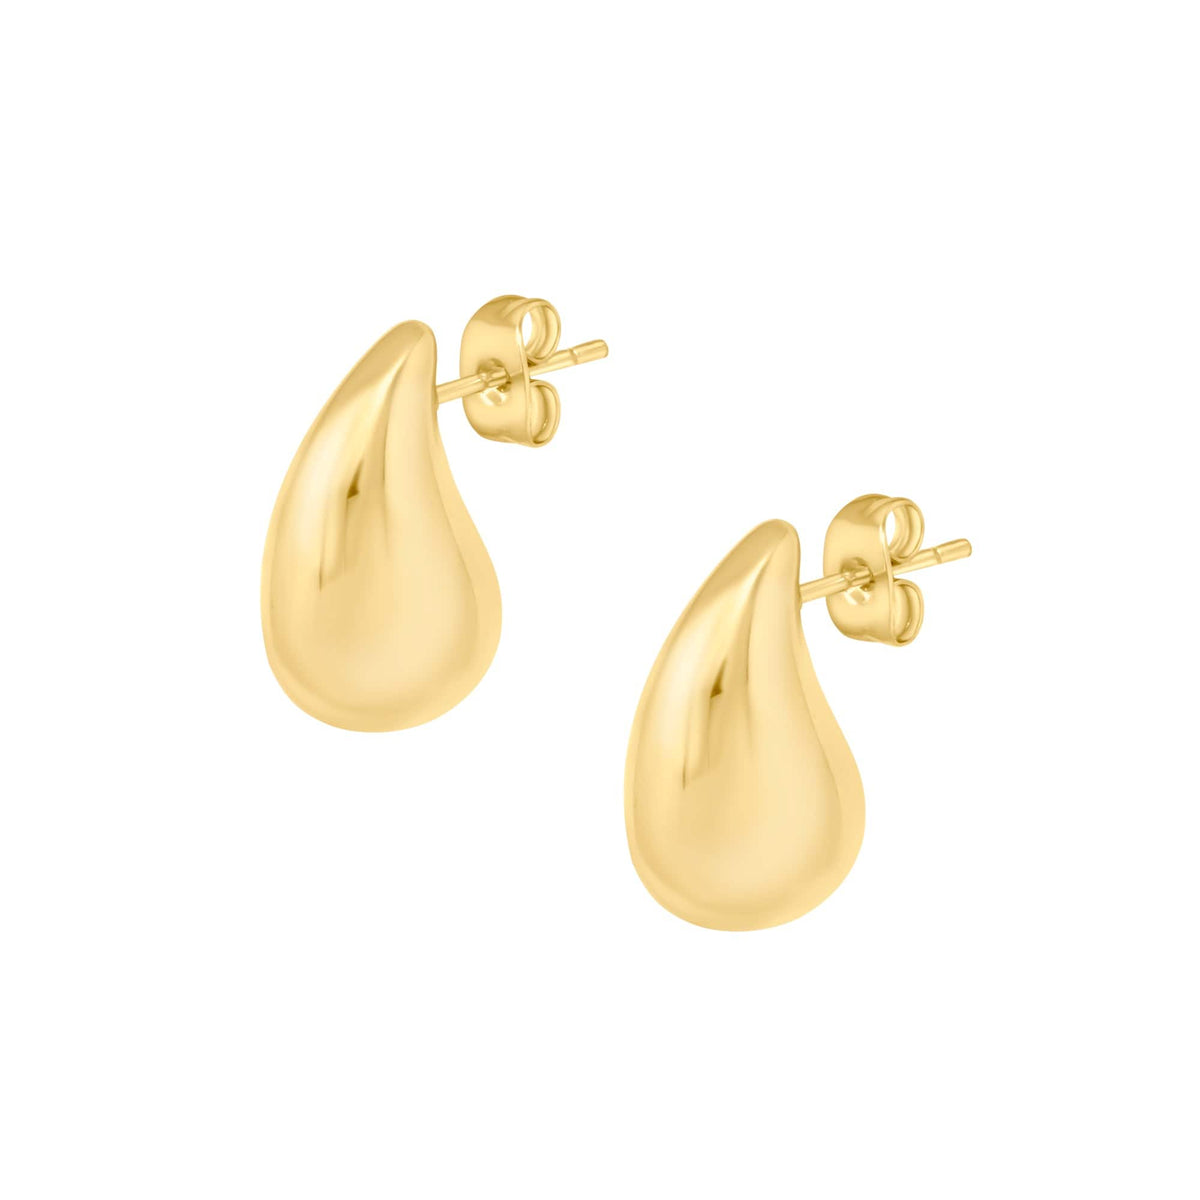 BOHOMOON Stainless Steel Kensington Stud Earrings Gold